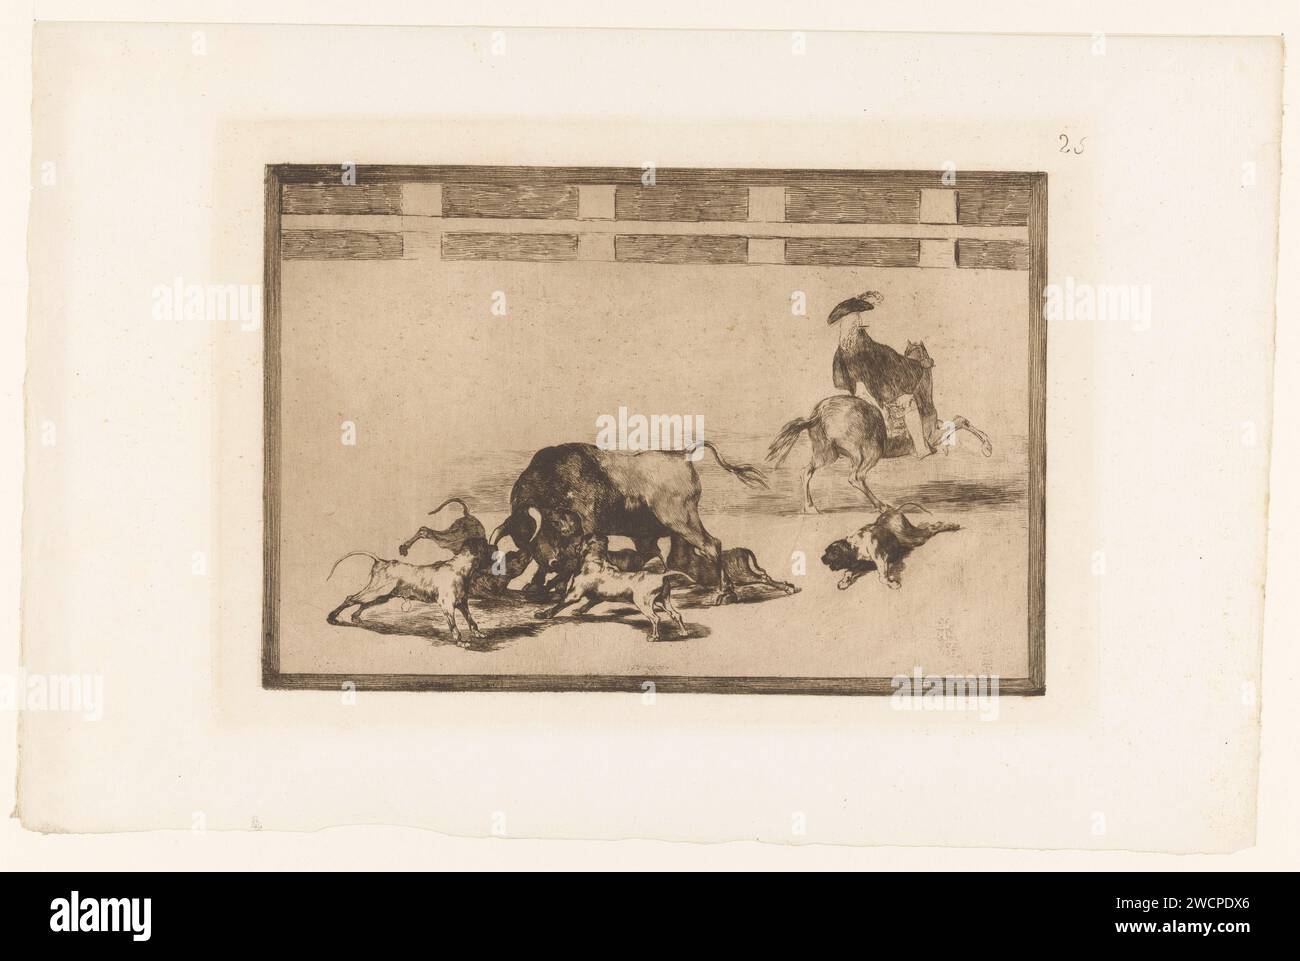 Taureau attaqué par des chiens, Francisco de Goya, 1876 imprimer cinq chiens attaquent un taureau dans une arène. Un chien est blessé par terre. A droite un homme à cheval, vu au dos. Numéroté en haut à droite : 25. Imprimeur : Spainpublisher : corrida de gravure sur papier de Paris Banque D'Images